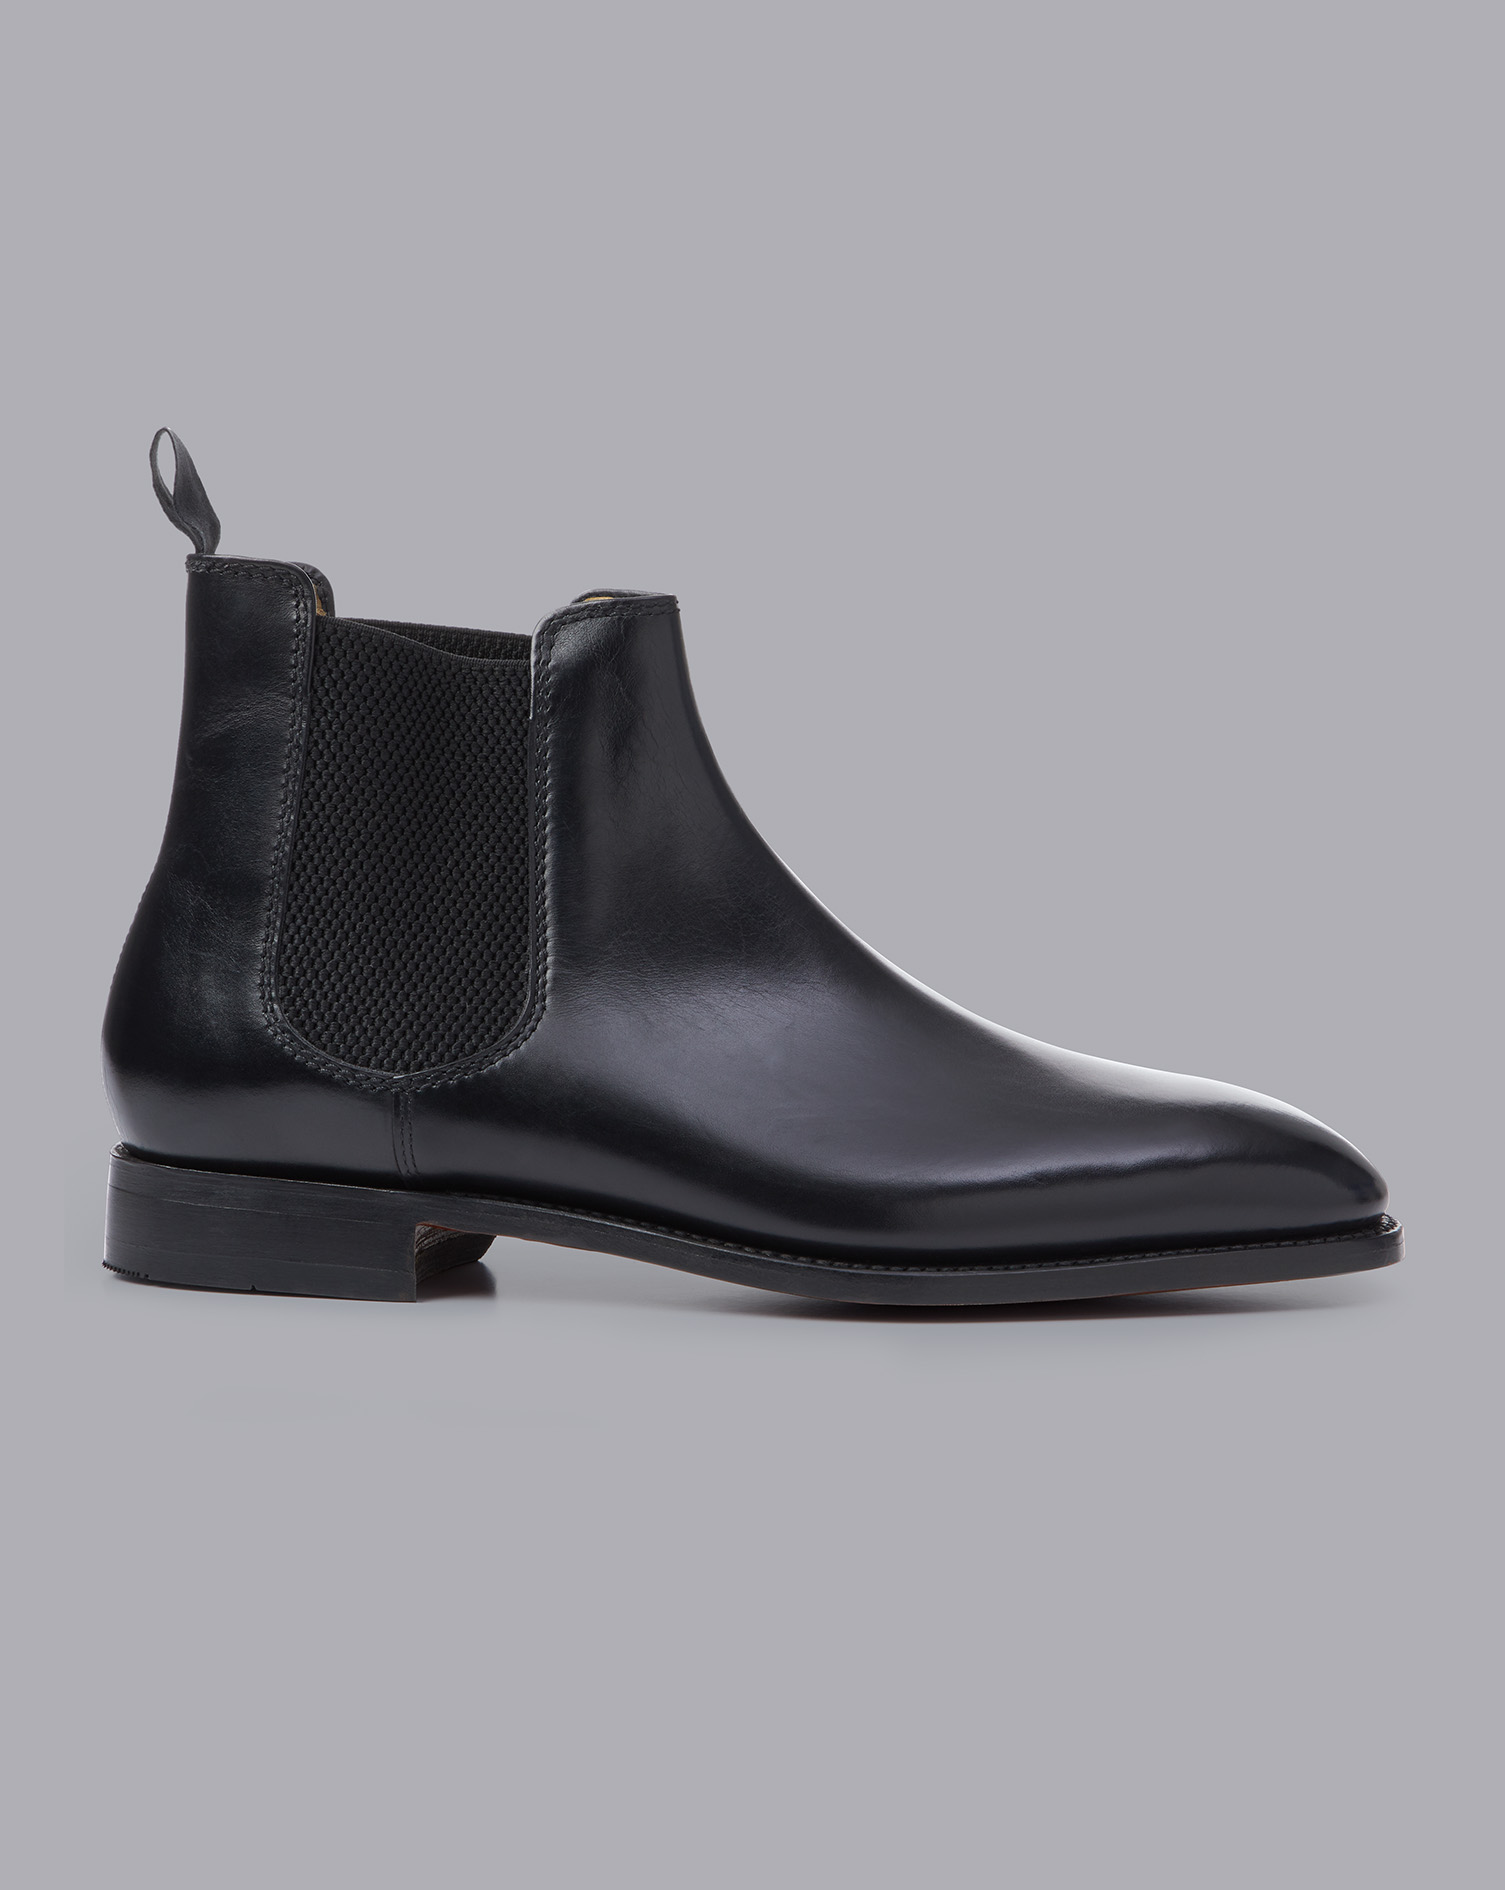 Men's Charles Tyrwhitt Chelsea Boots - Black Size 10 Leather
